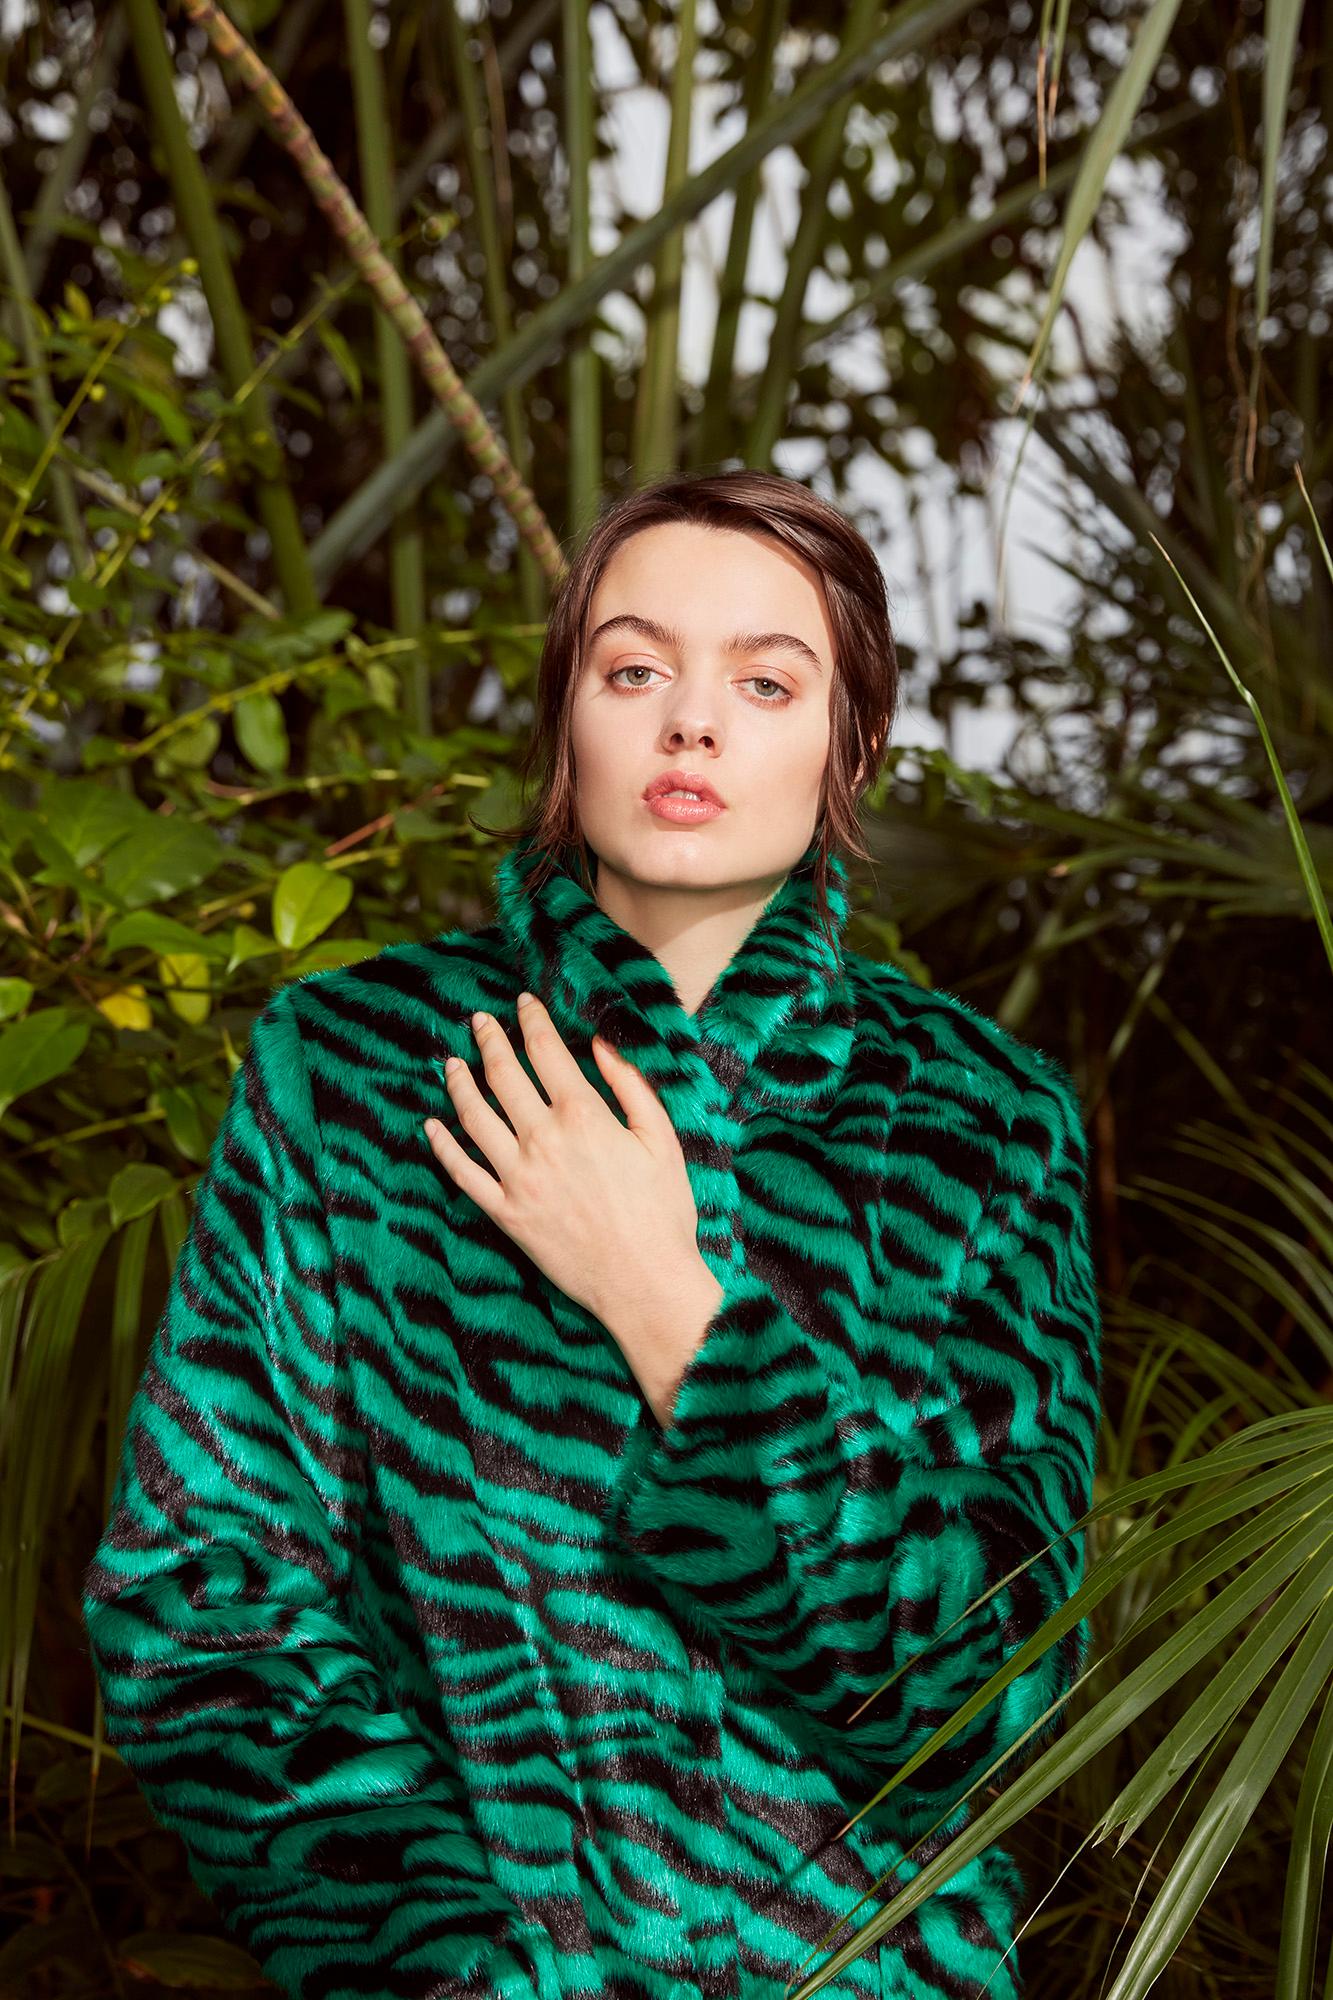 Verheyen London Esmeralda Faux Fur Coat in Emerald Green Zebra Print size uk 8 For Sale 4